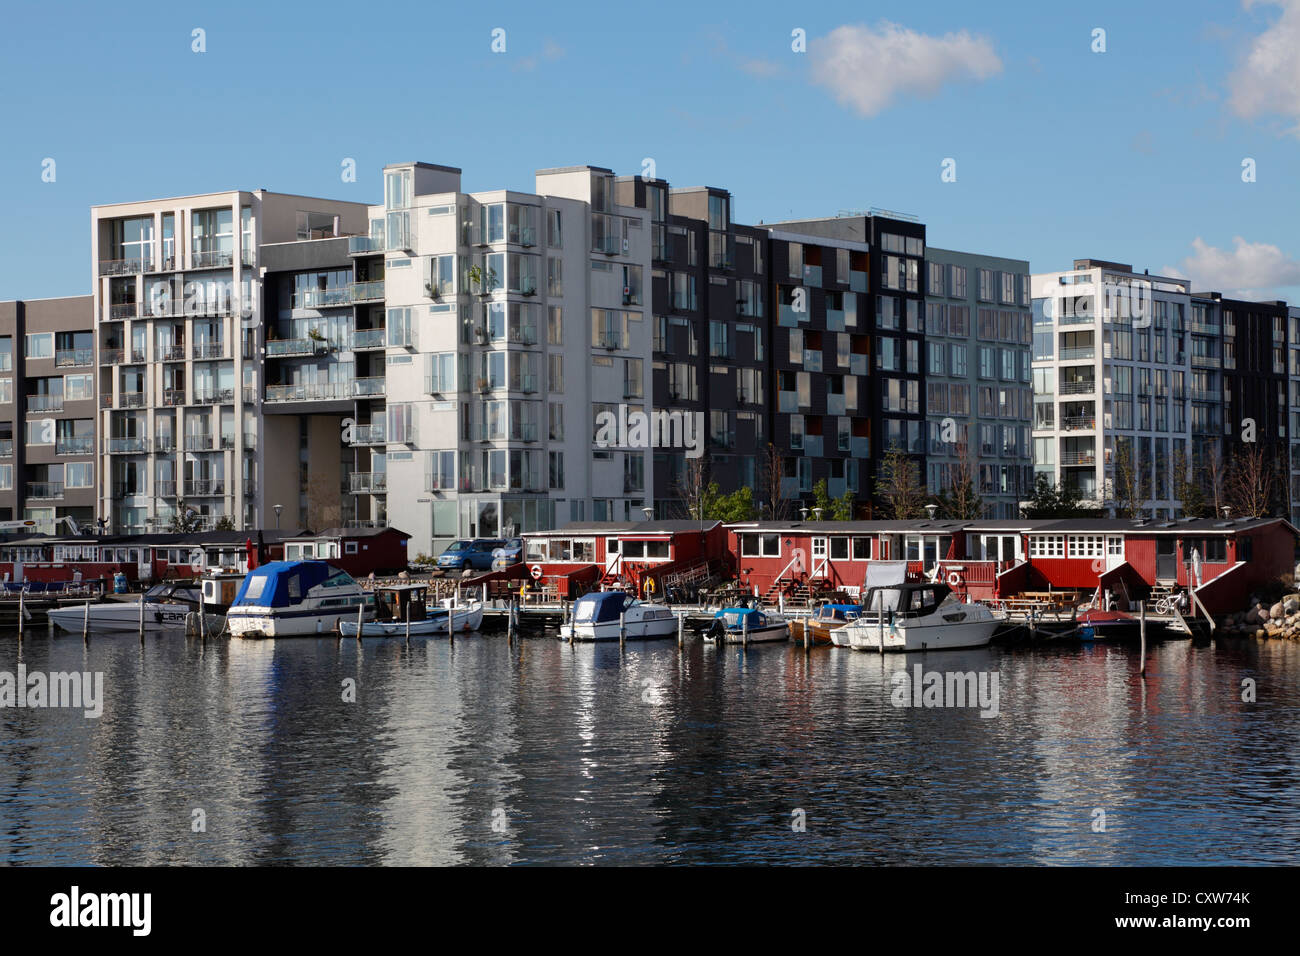 Moderne Wohnhäuser mit Venedig - wie Kanäle zwischen den Gebäuden in Kopenhagen Sluseholmen, einer ehemaligen Industriebrache. Stockfoto